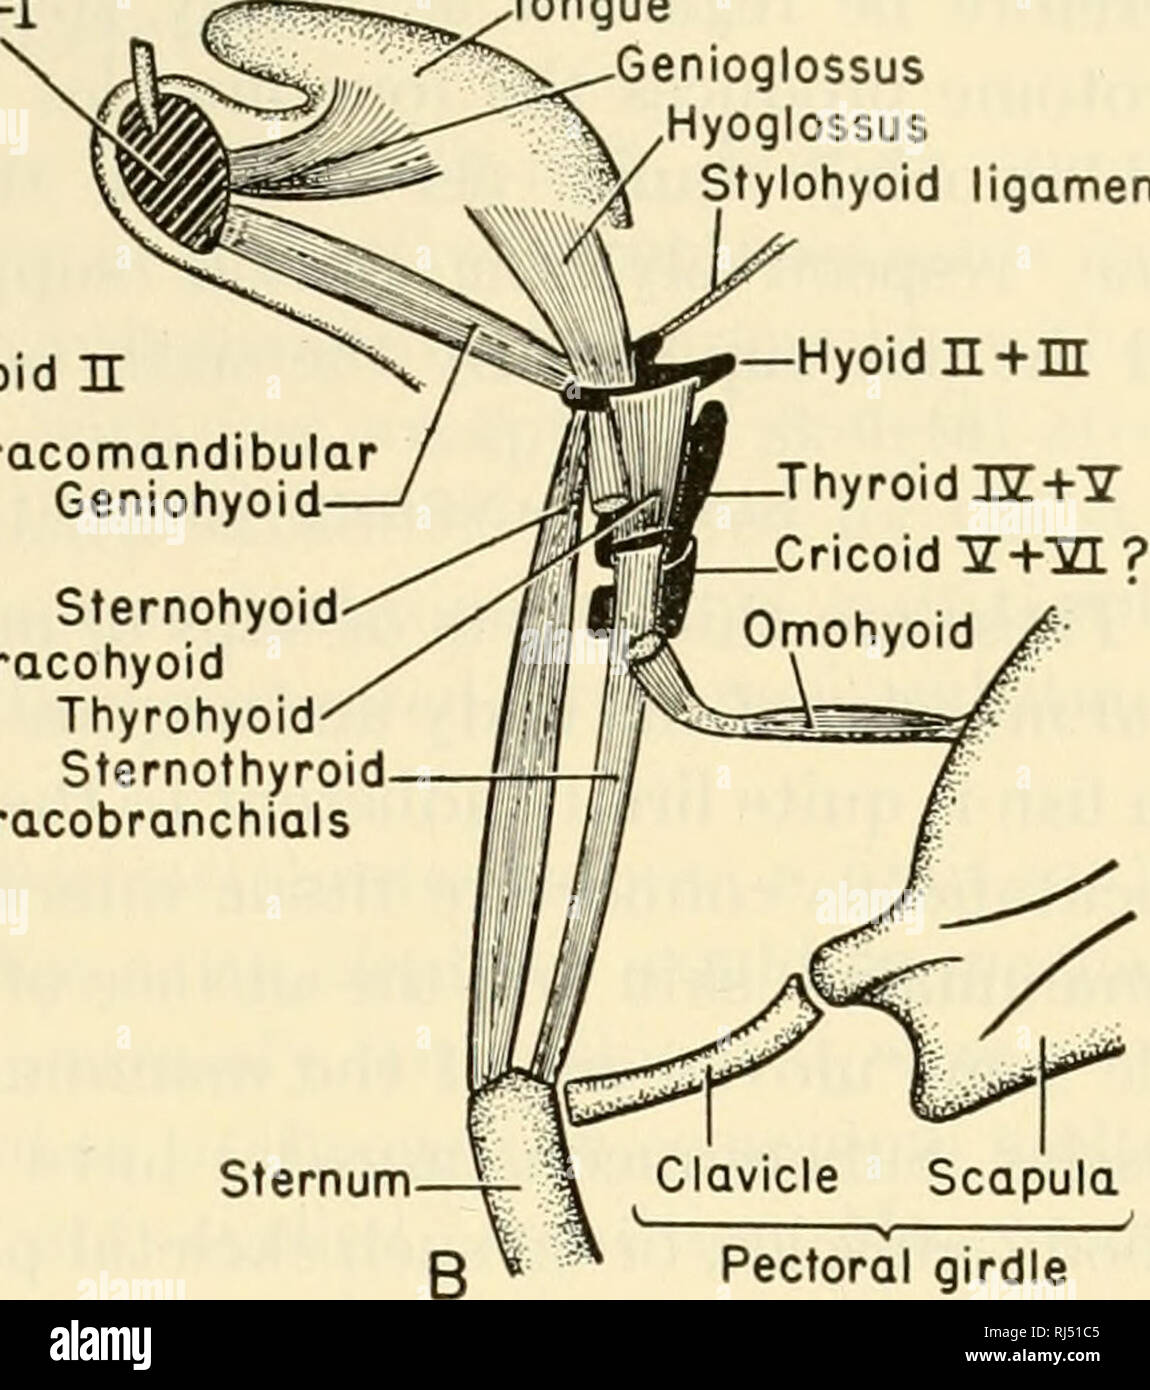 . Die chordates. Chordata. IE Hyoid Coracomandibular Geniohyoid Sternohyoid Coracohyoid Thyrohyoid Sternothyroid Coracobranchials^^v^Zunge. Genioglossus "^v/Hyoglossus" Stylohyoid Ligament - Hyoid n+m. Schultergürtel Abb. 97. Schematische Darstellung der hypobranchial Muskeln. (A) Shark ventrale Ansicht. (B) Säugetier: Ansicht von der linken Seite. der Haut (Abb. 96). Sogar der trapezius, eine umfangreiche und wichtige oberflächliche dorsalen Muskel des Pektorale Anhängsel, hat, zumindest teilweise, die dieser Gruppe zugewiesen. Zum Aufrufen des menschlichen Gesichts Muskeln "Viszeralen" scheint eine Perversion des Stockfoto